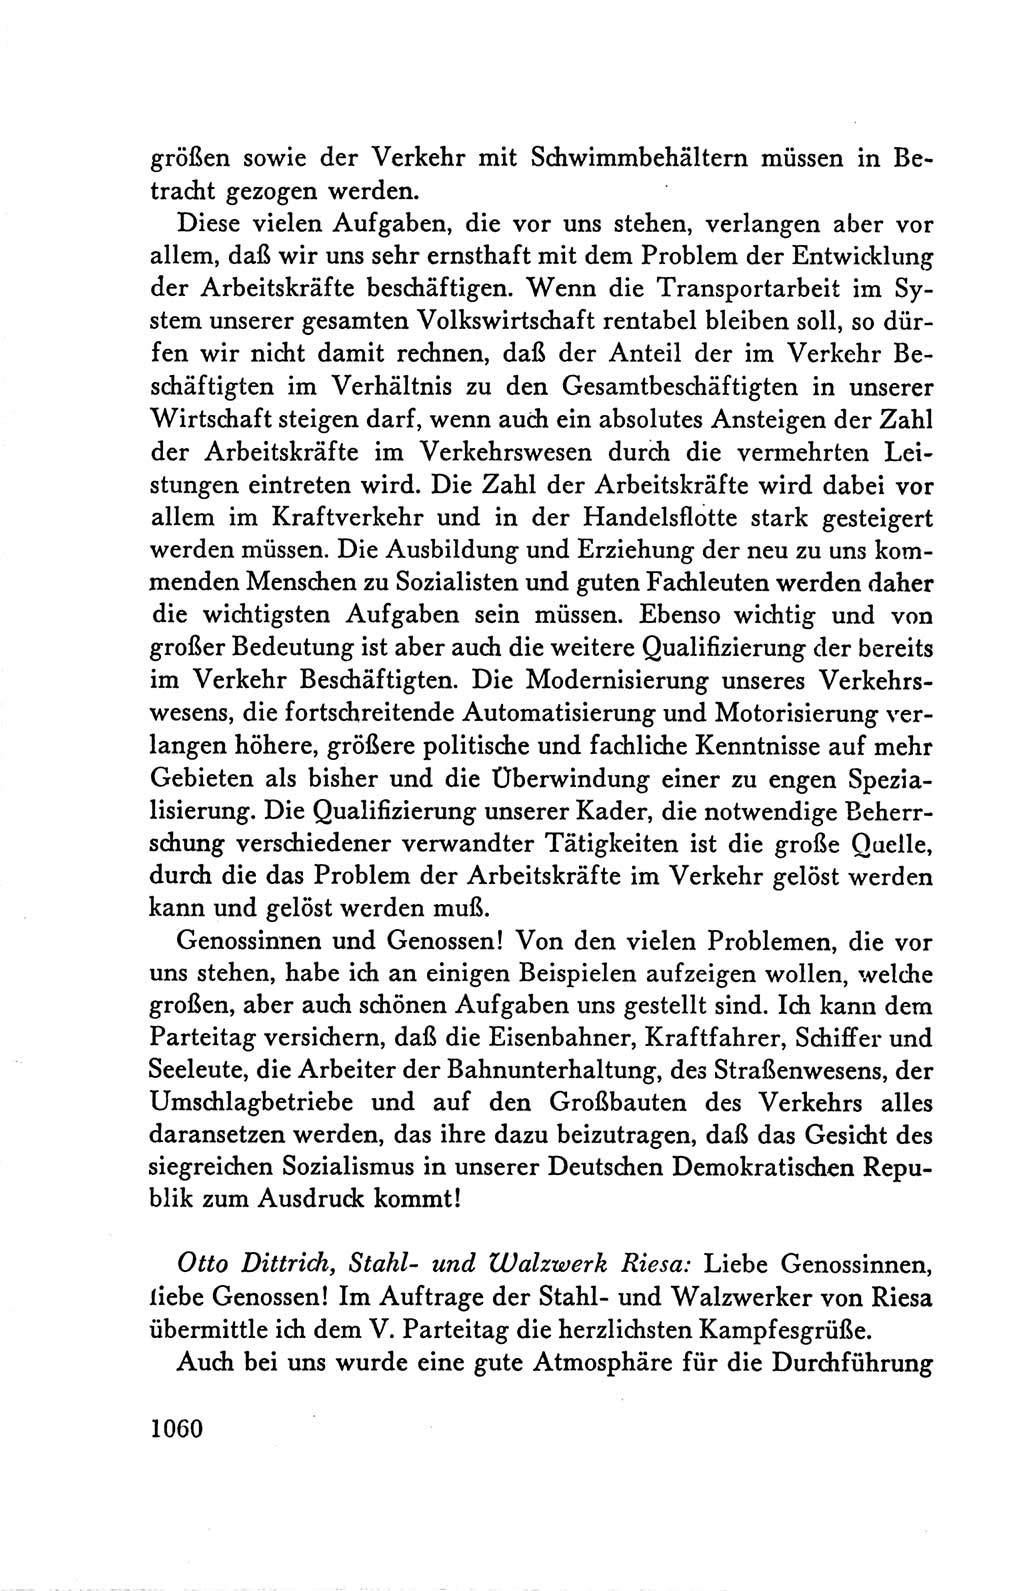 Protokoll der Verhandlungen des Ⅴ. Parteitages der Sozialistischen Einheitspartei Deutschlands (SED) [Deutsche Demokratische Republik (DDR)] 1958, Seite 1060